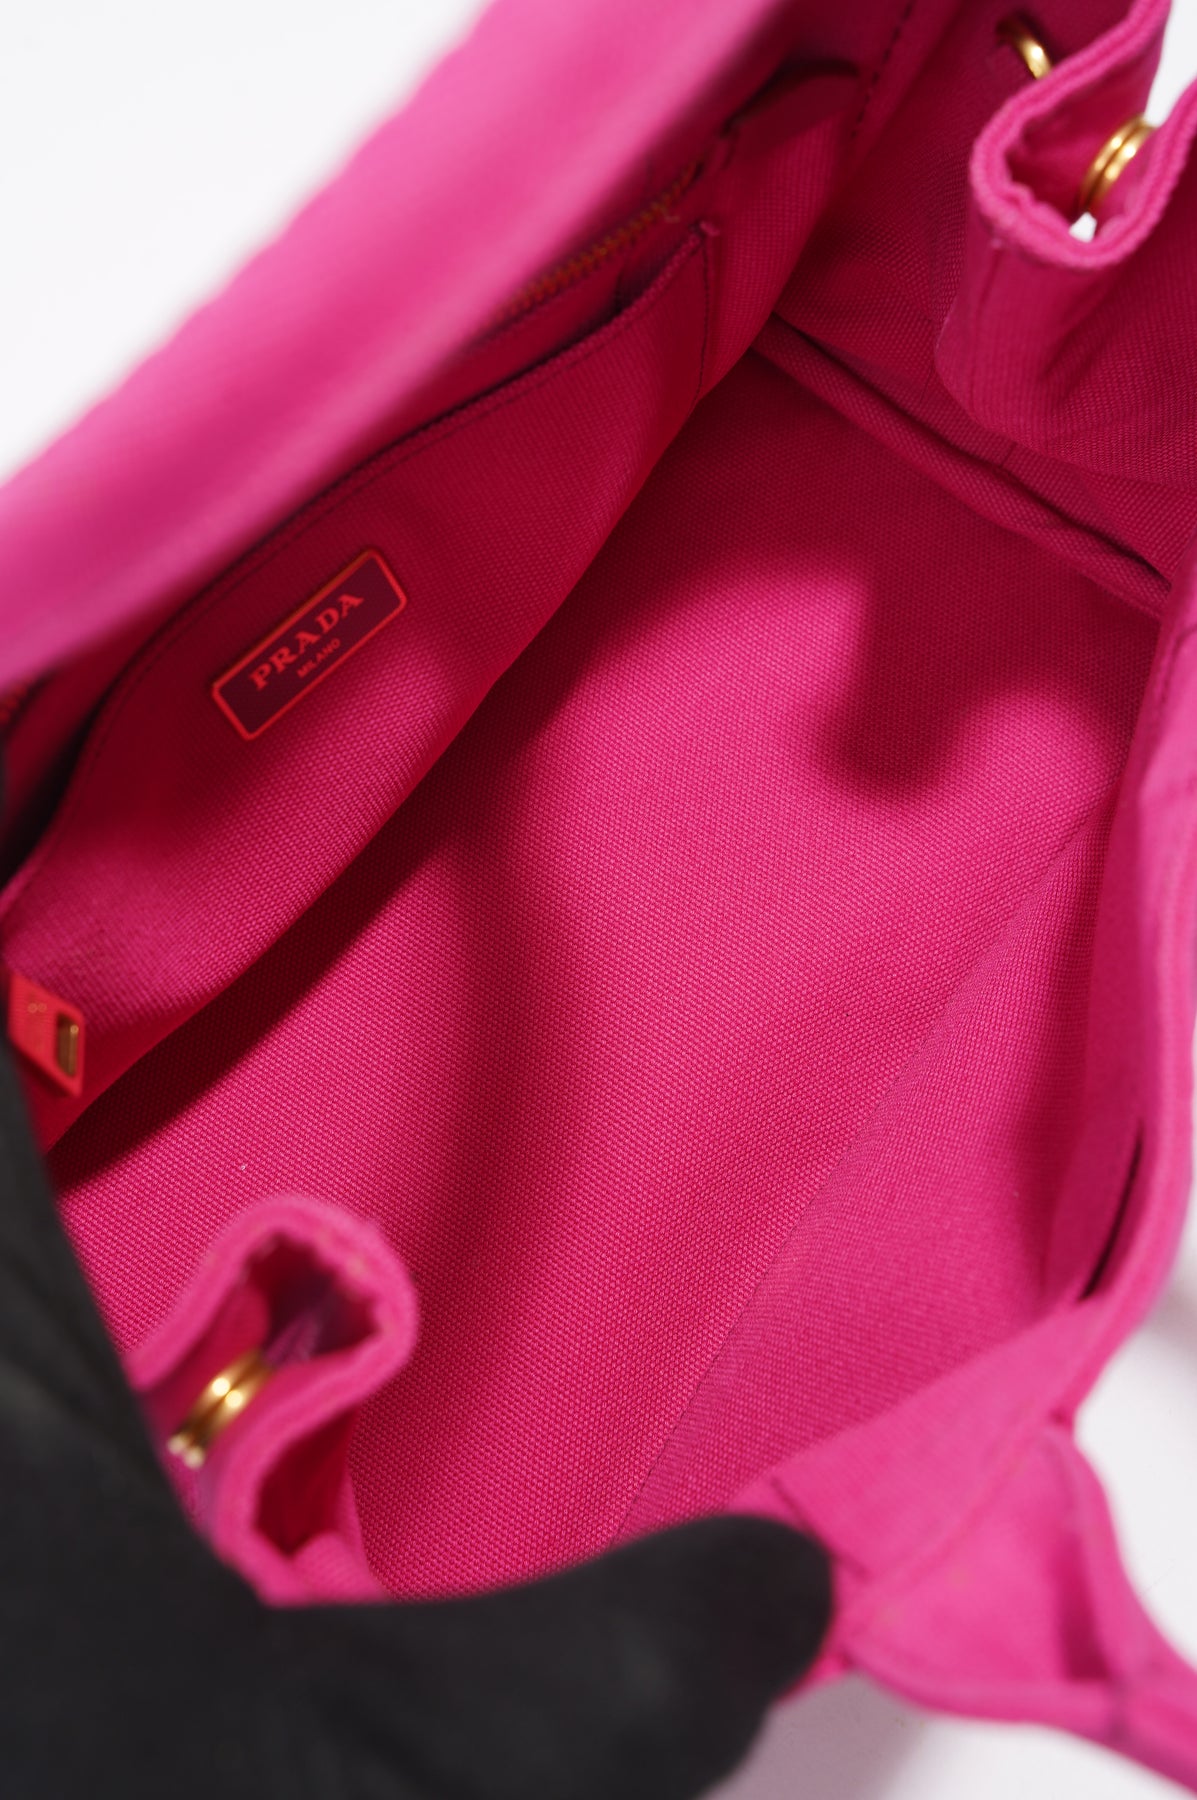 Fake Hot Pink Prada Shoulder Bag!!!